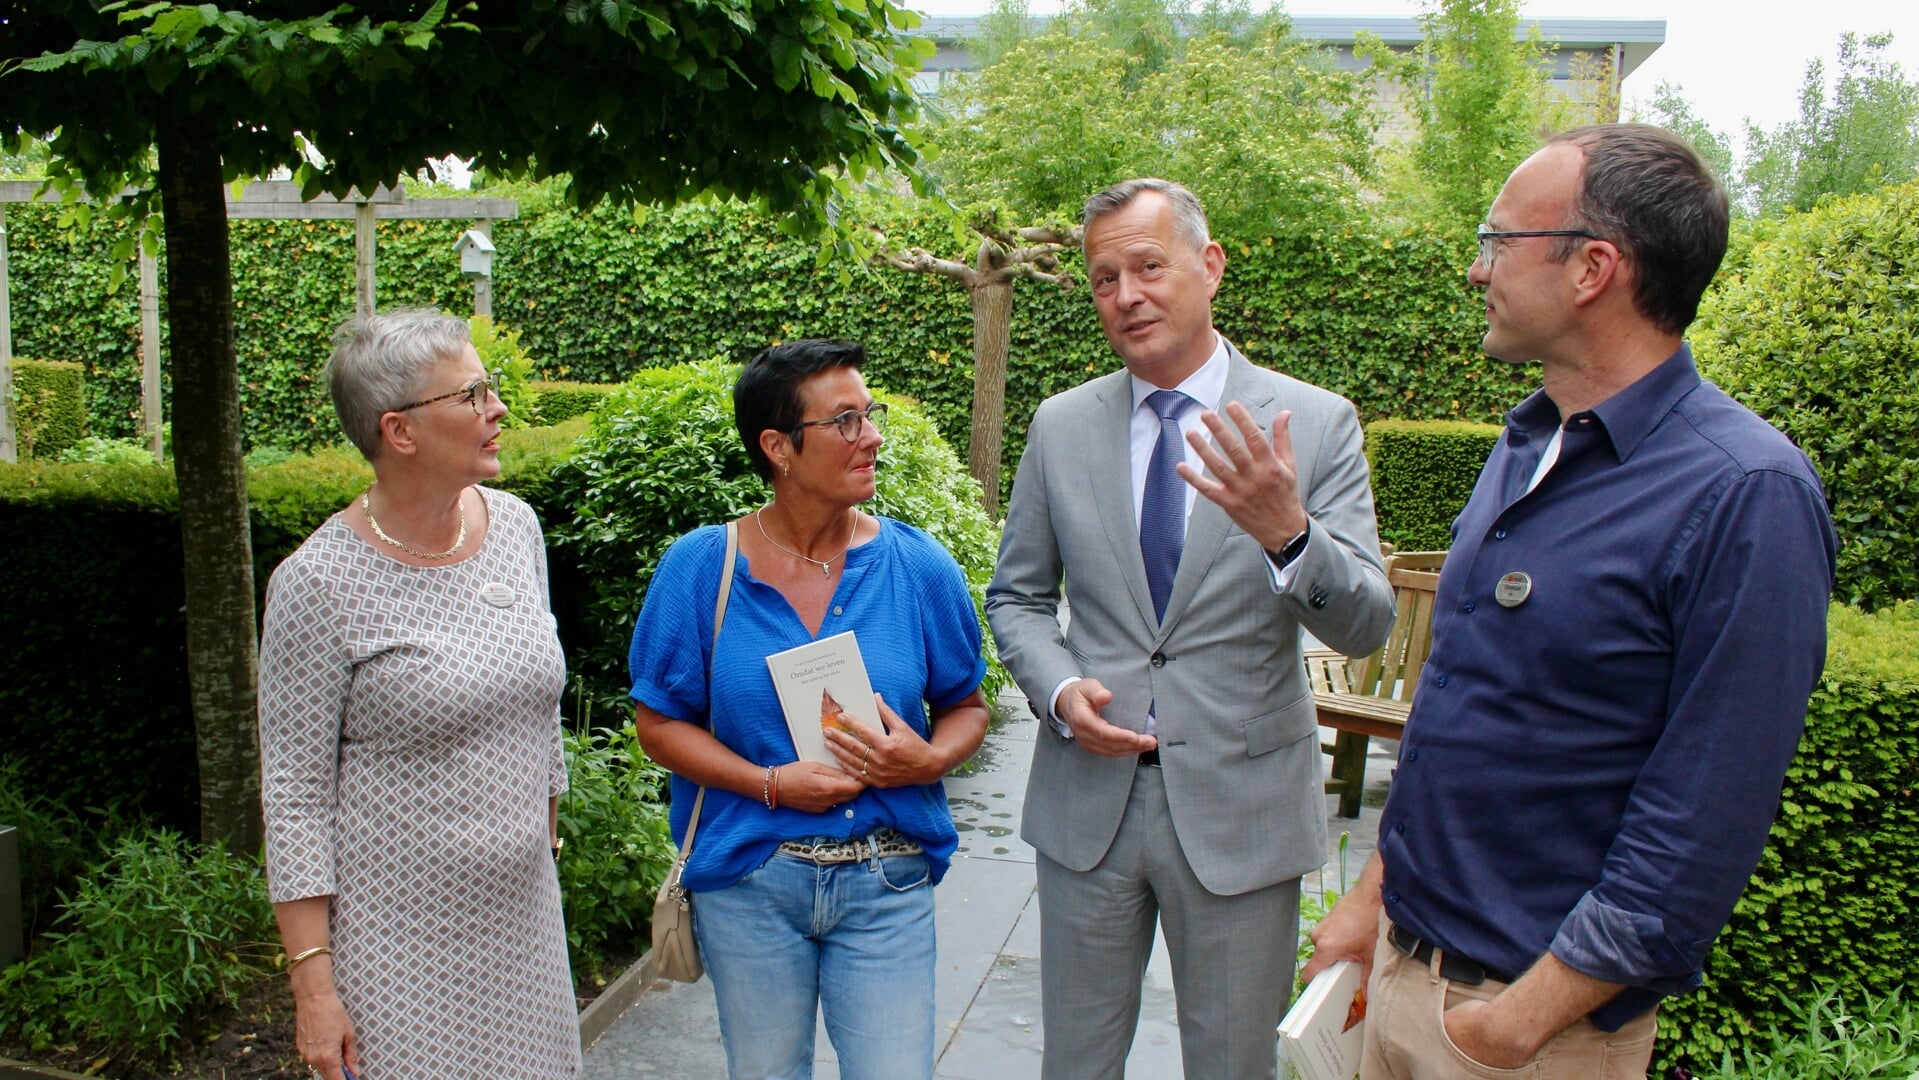 Arthur van Dijk in de tuin van Bardo in gesprek met Simone Koops (links), Jacqueline Buijs en Christiaan Rhodius (rechts).